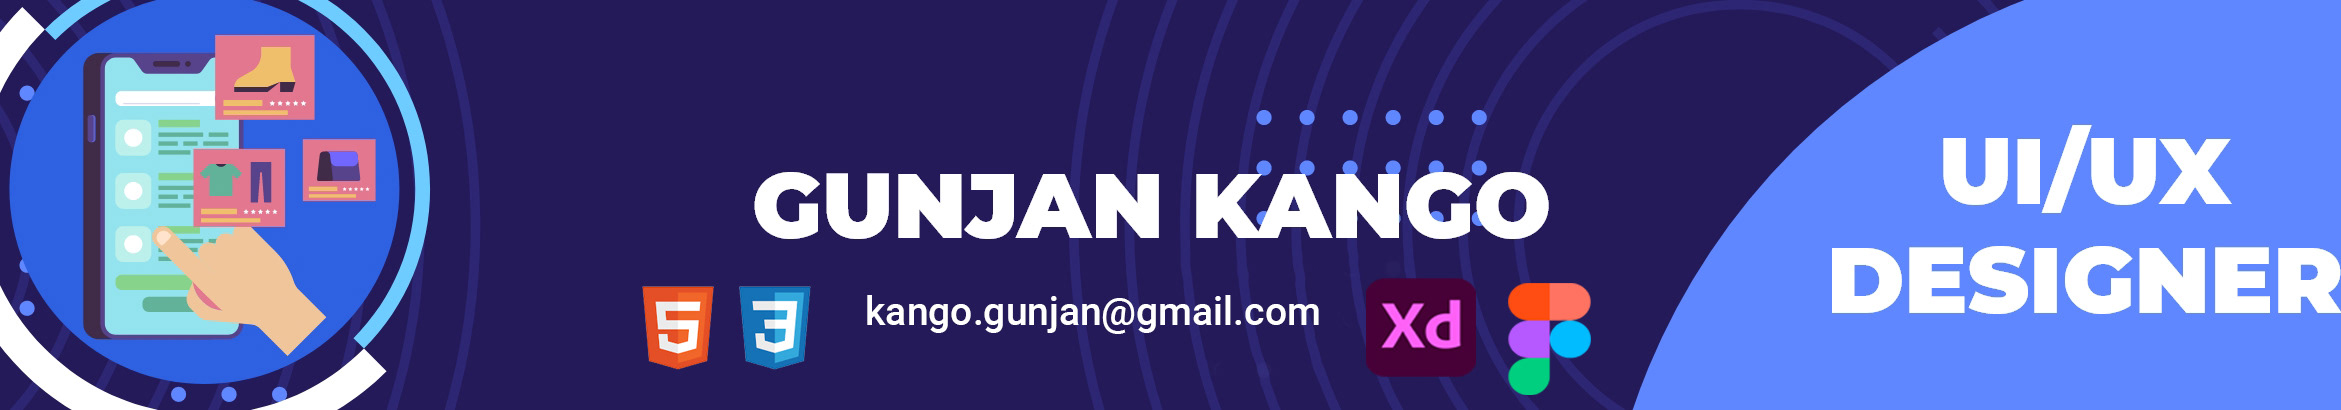 Gunjan kango's profile banner